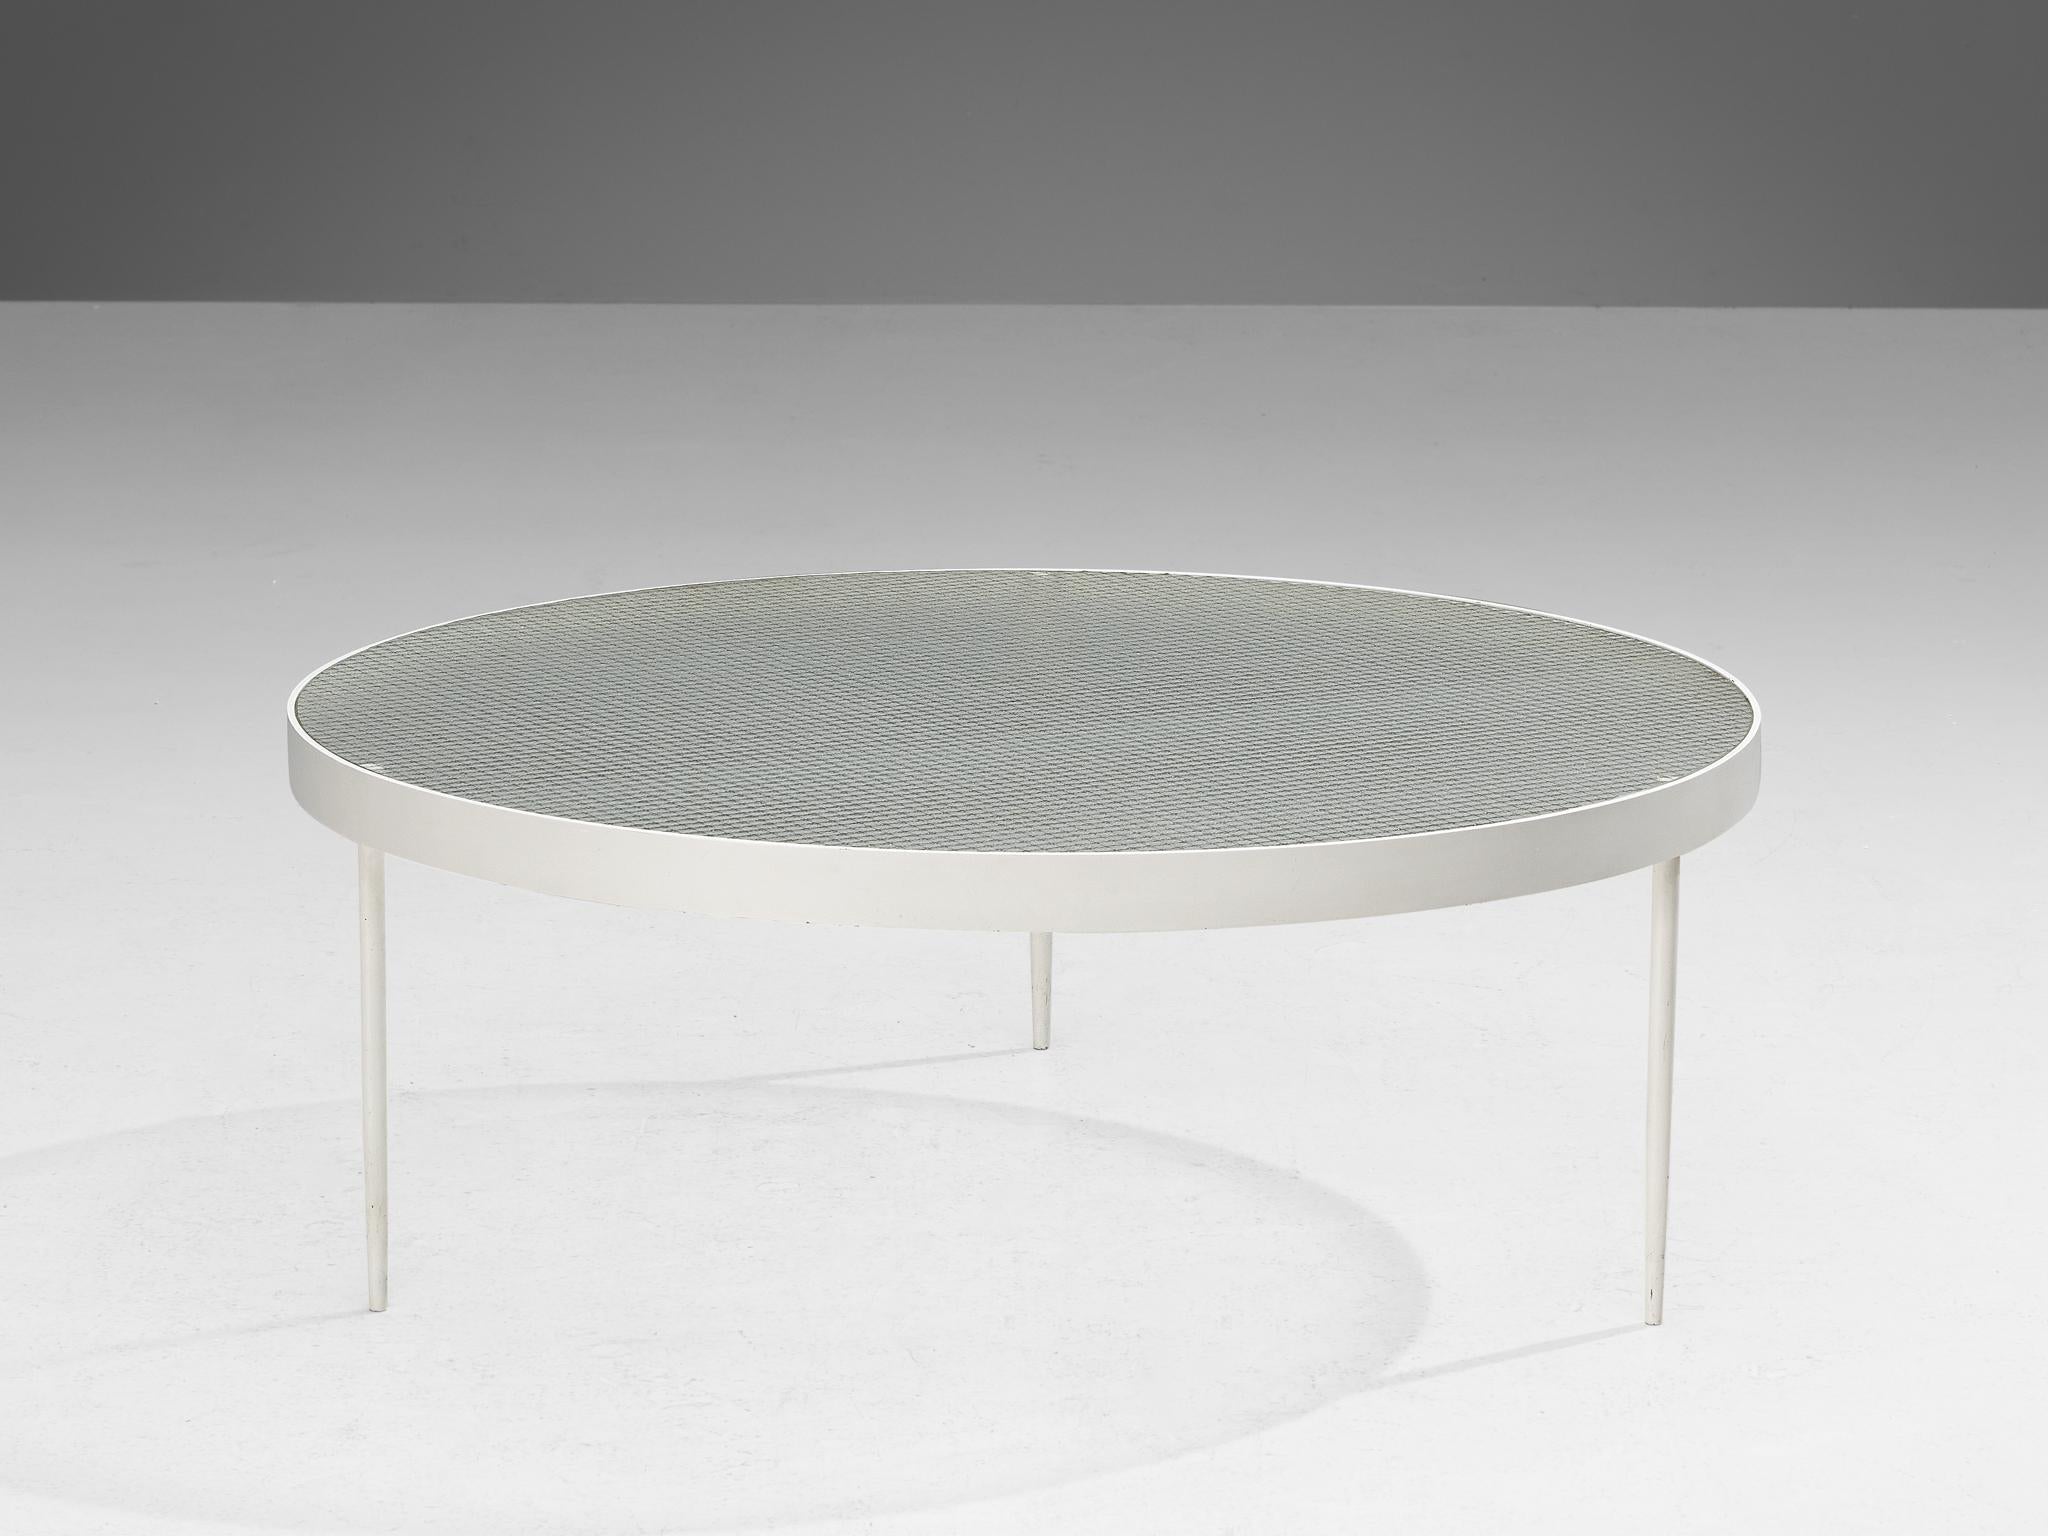 Janni Van Pelt, 'G4' Couchtisch, Drahtglas, weiß lackiertes Metall, Niederlande, Entwurf 1958

Runder Couchtisch aus weiß beschichtetem Metall und klarem Drahtglas. Dieser Tisch ist eine Variante von Janni Van Pelts Modell G4, von dem es mehrere